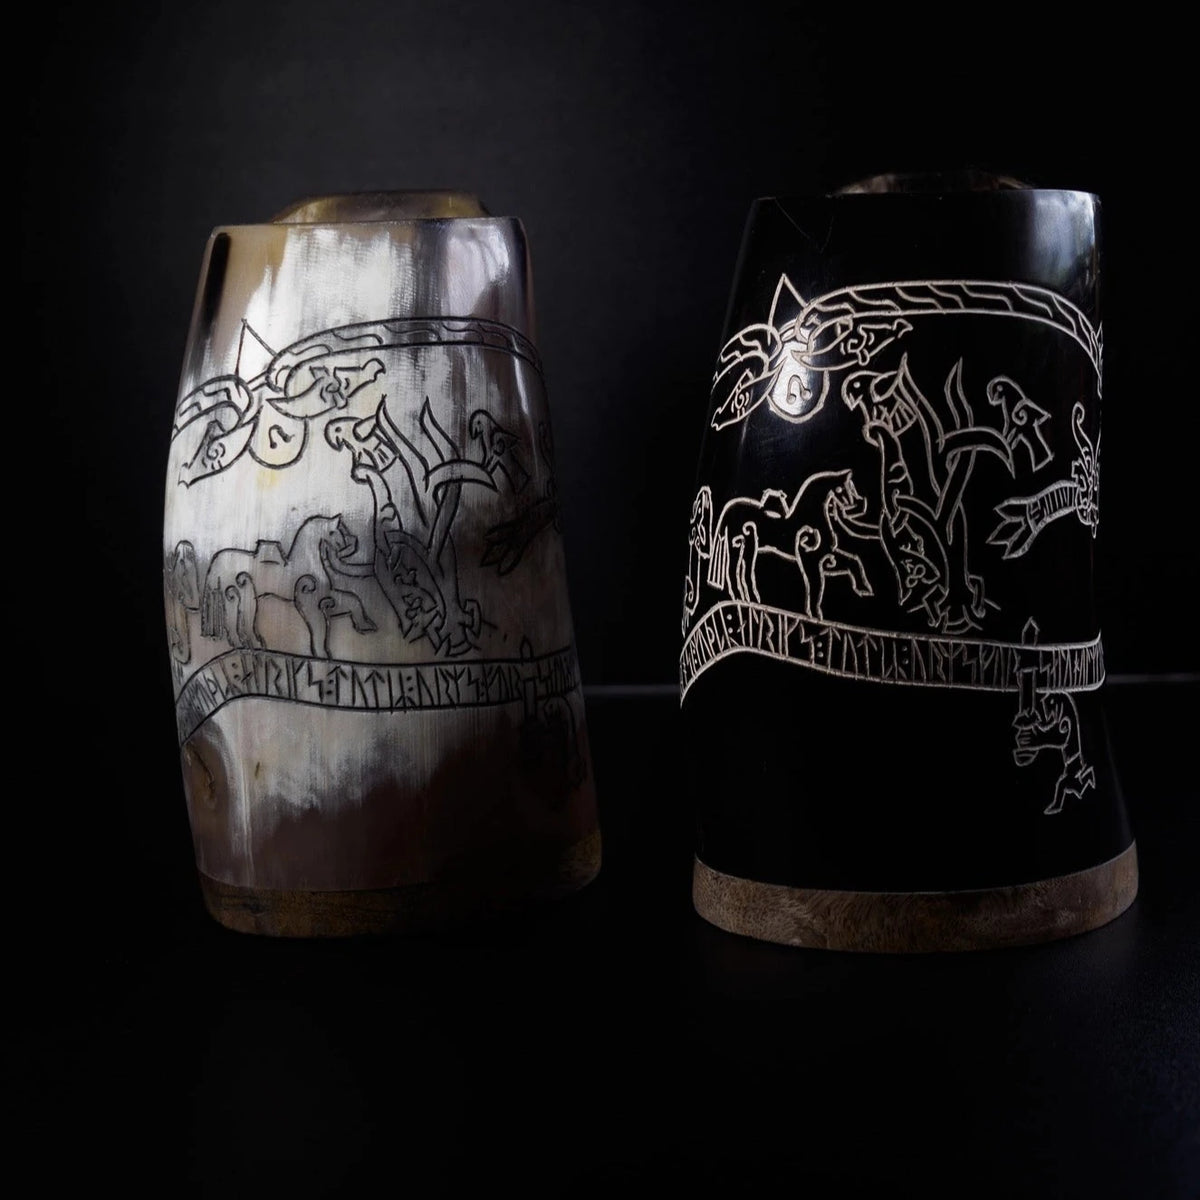 Carved mug, Sigurdsagan 500 ml